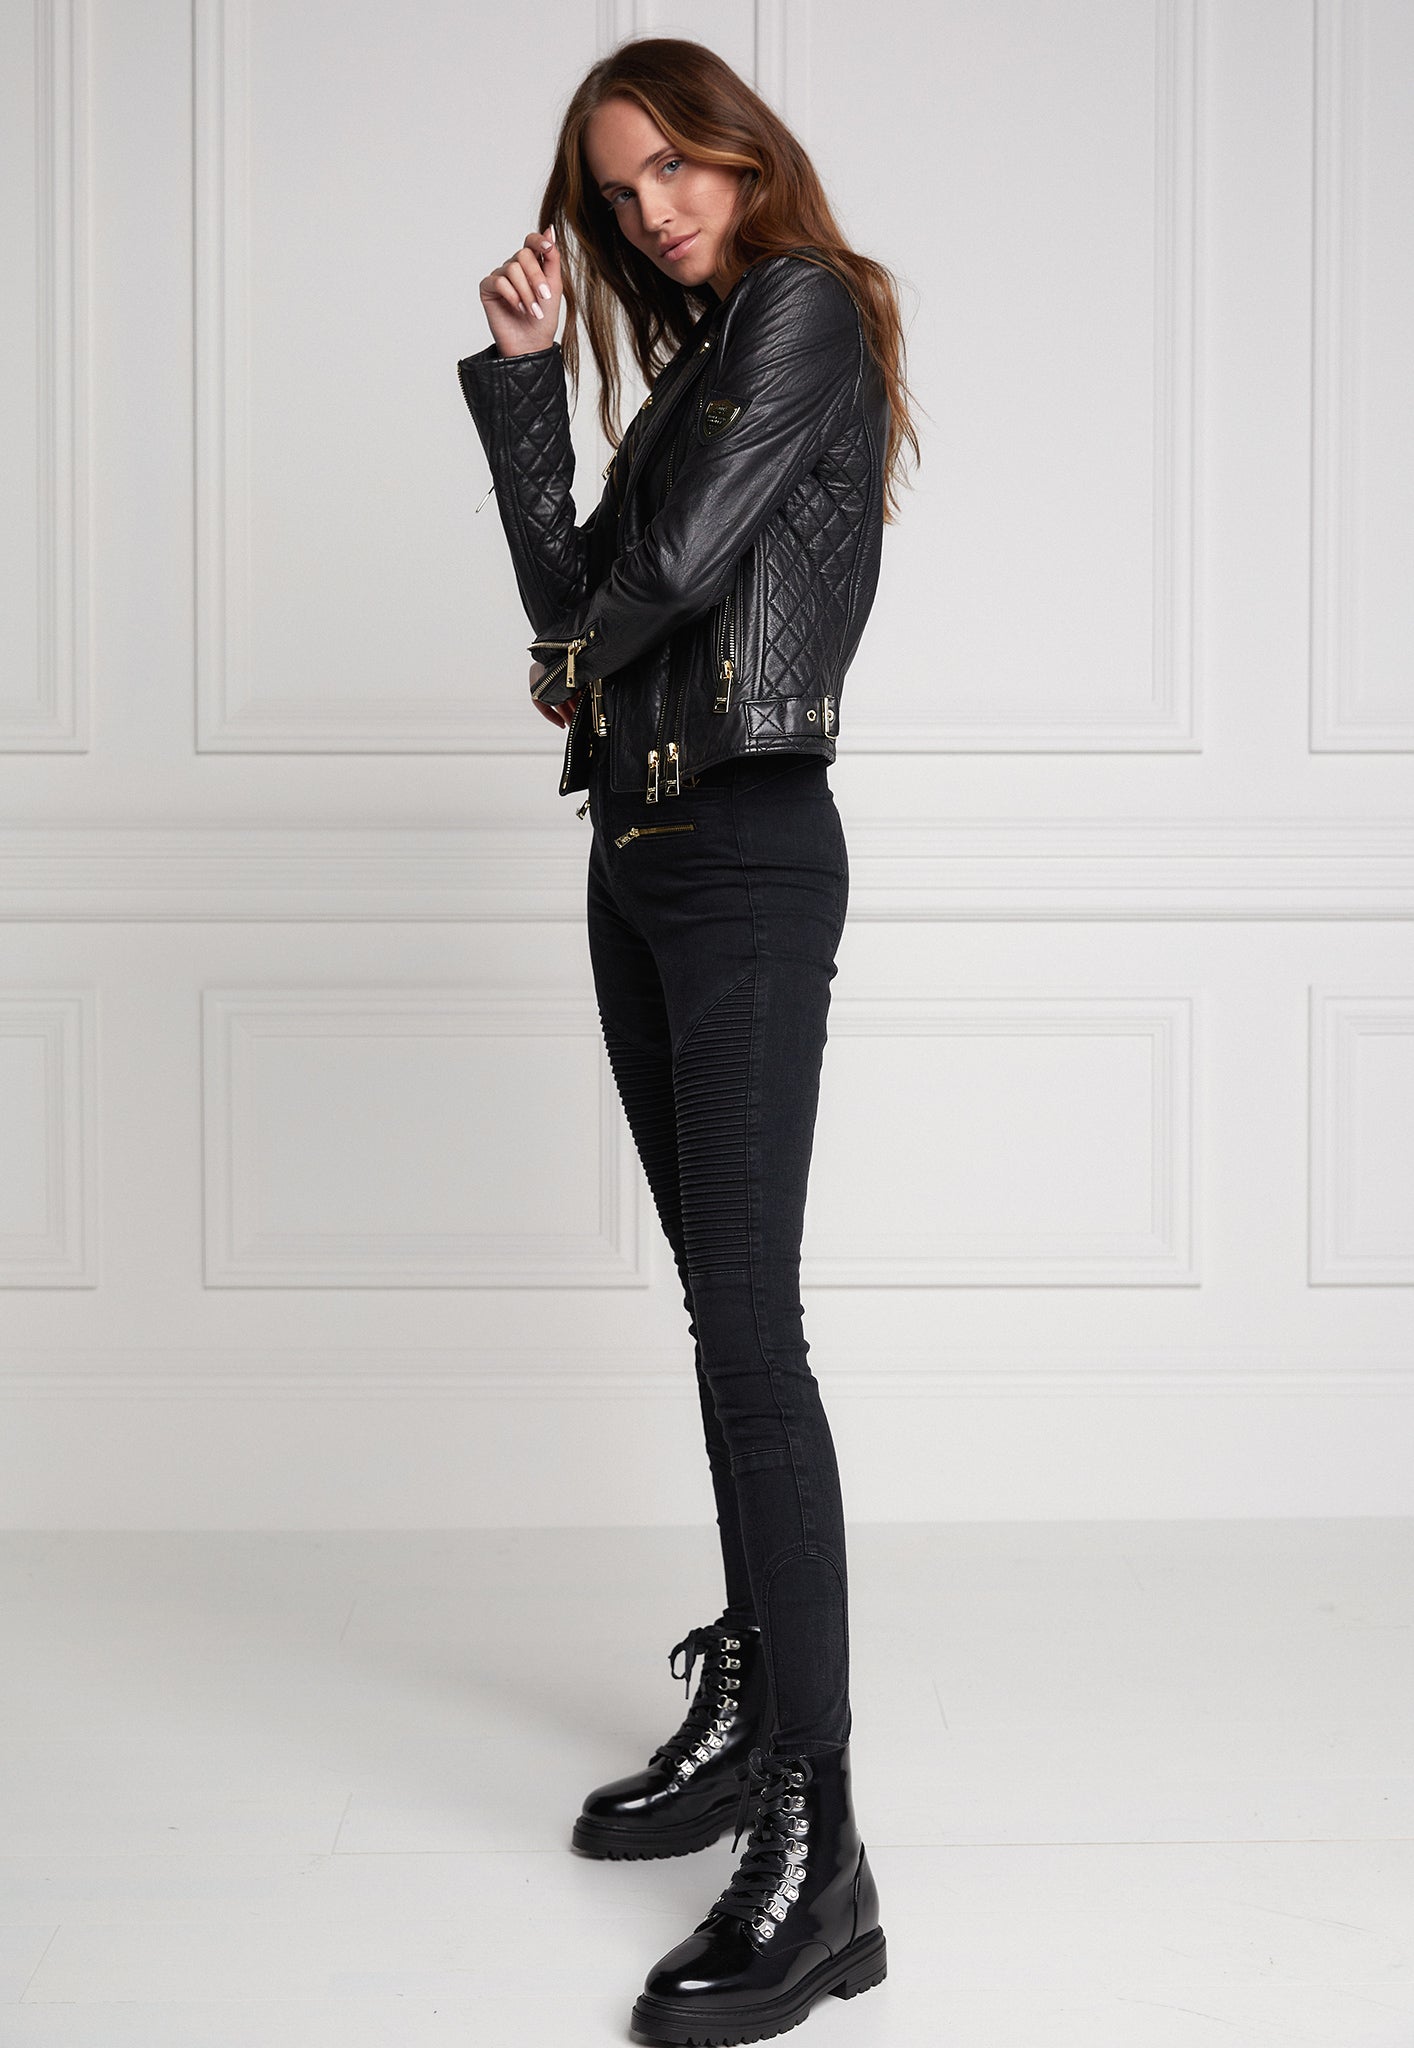 Leather Biker Jacket - Black sold by Angel Divine